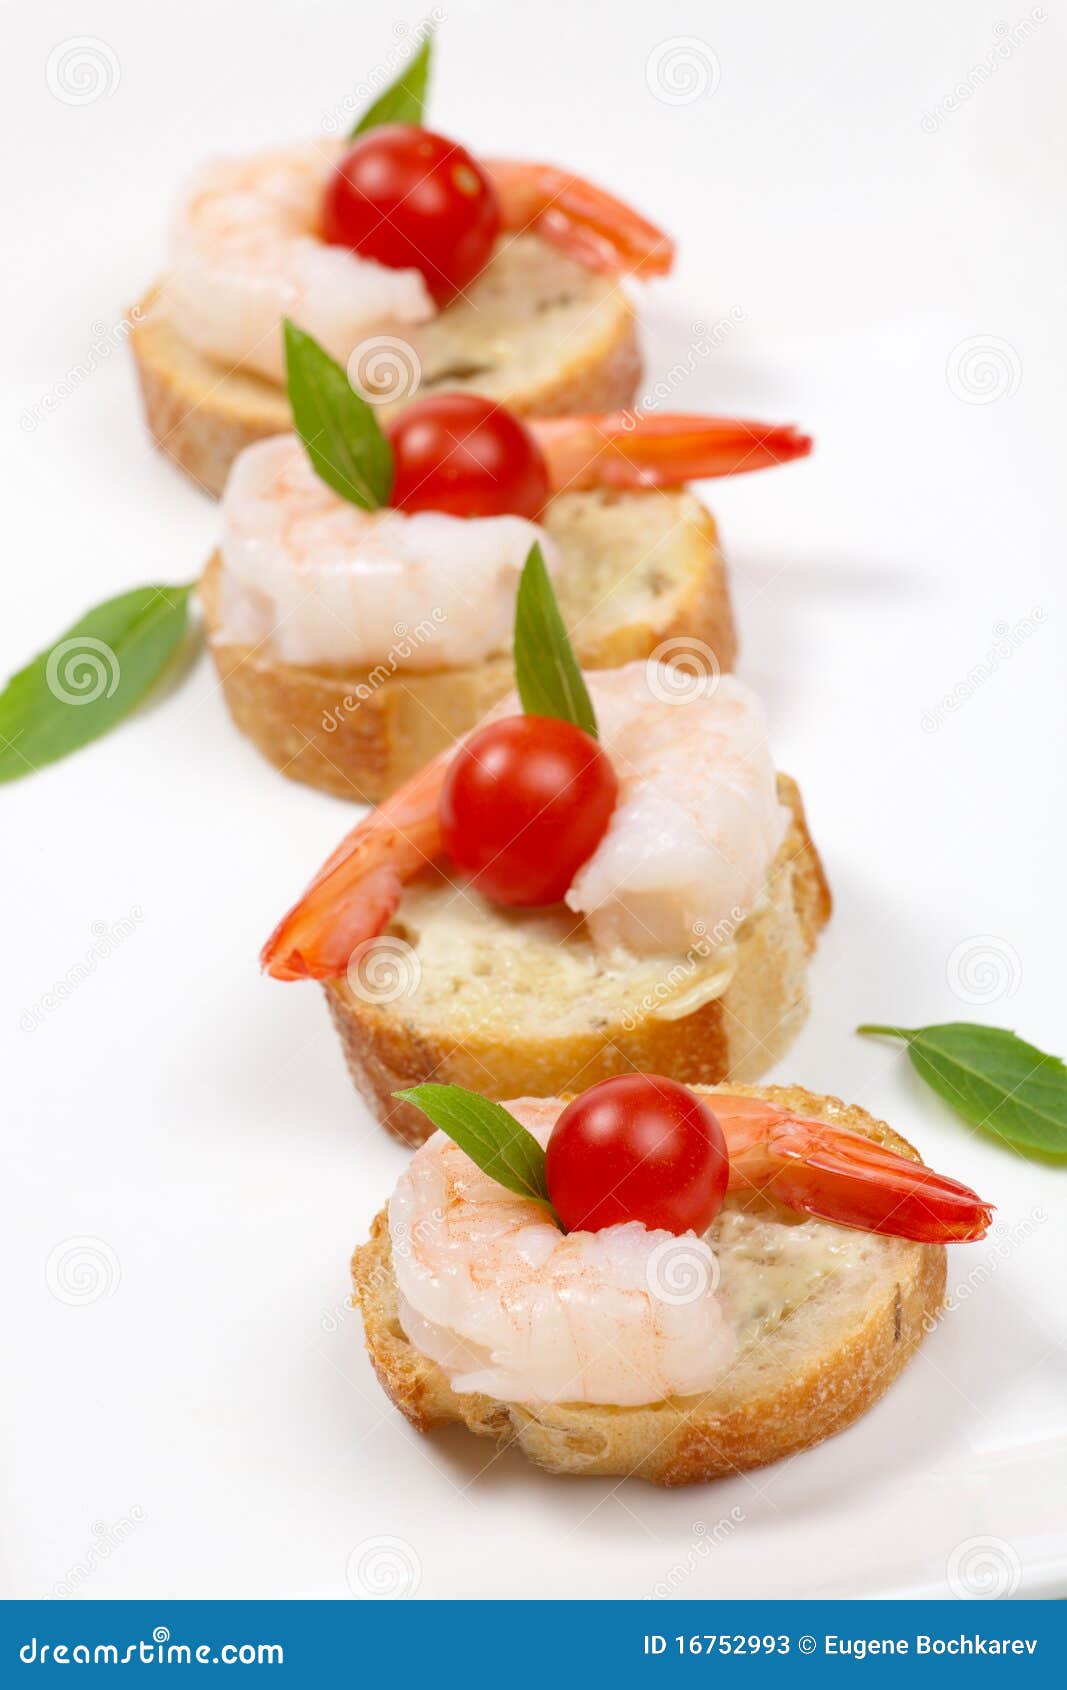 shrimp canape